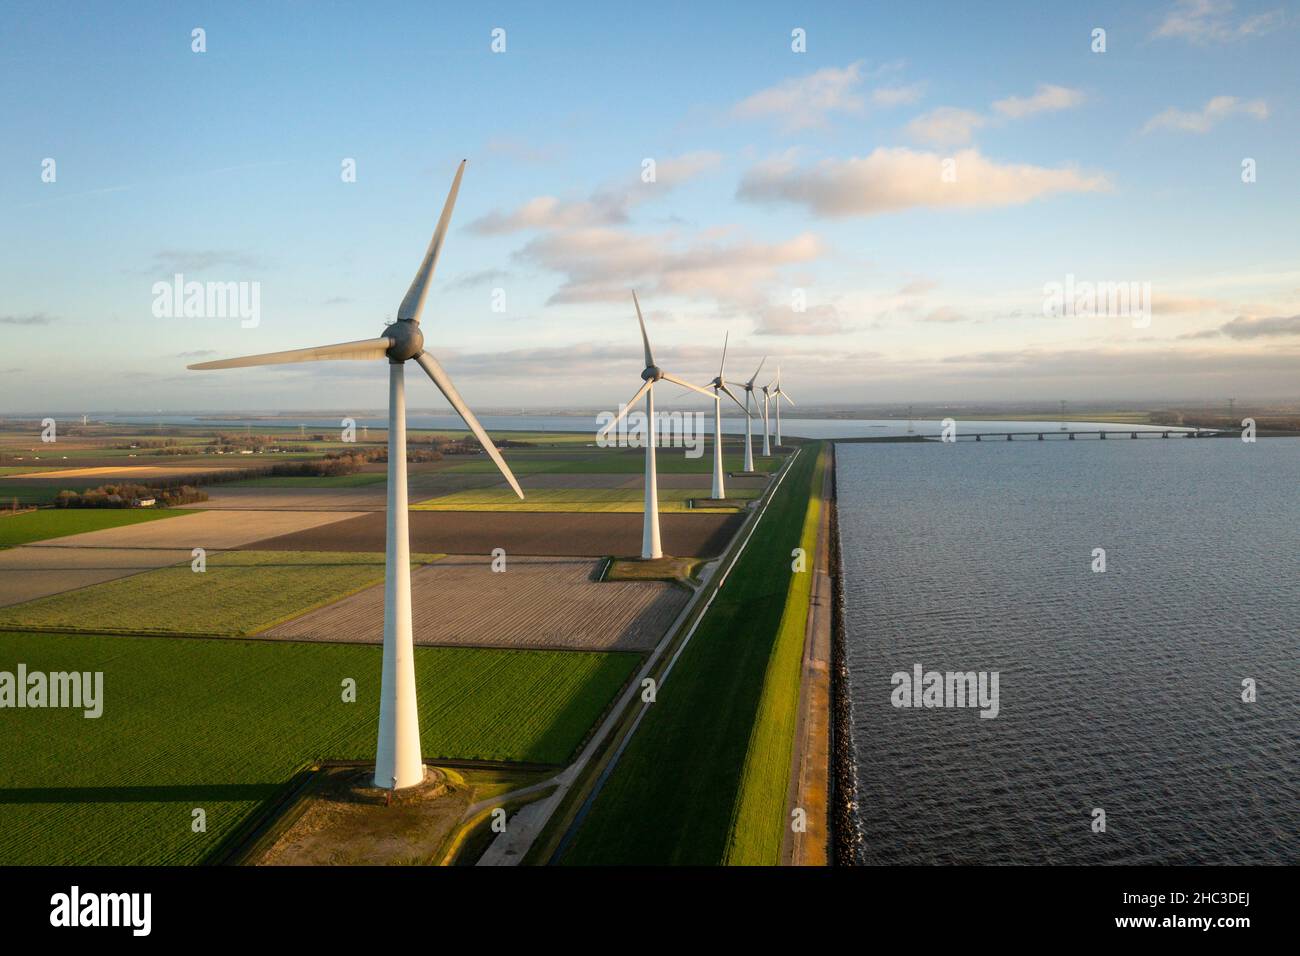 Wind turbines in green fields near lake Stock Photo